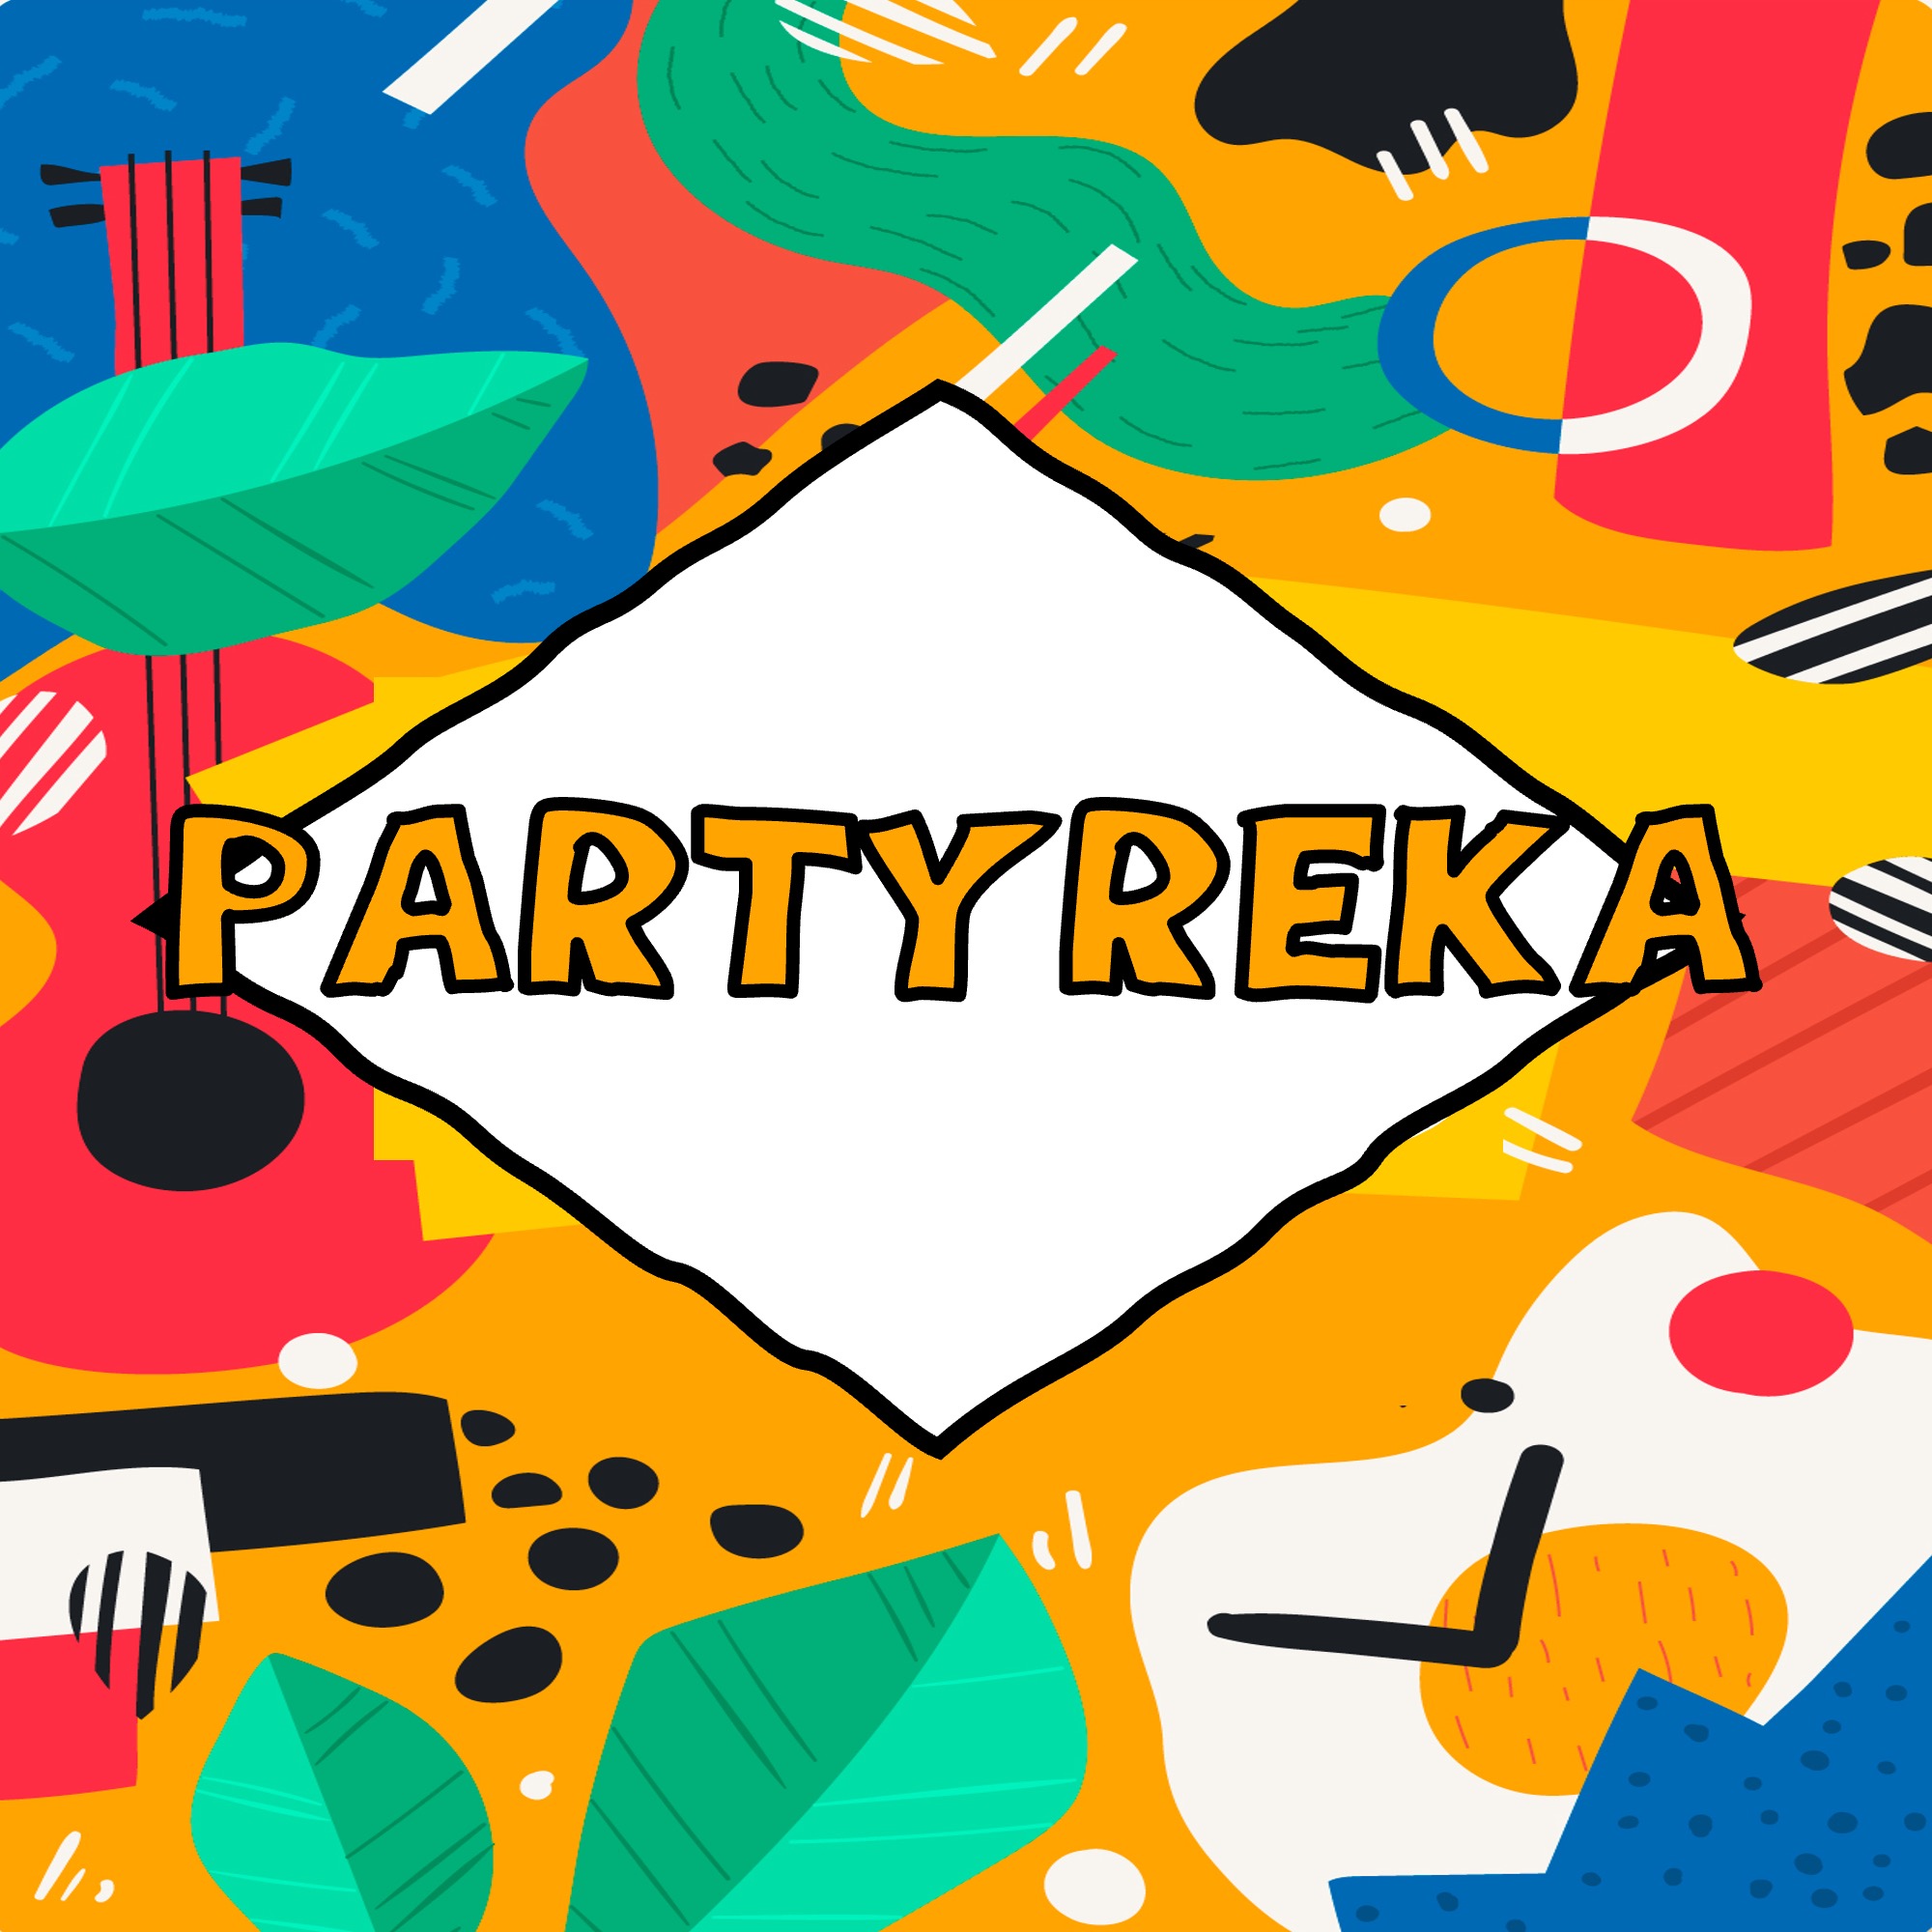 Partyreka